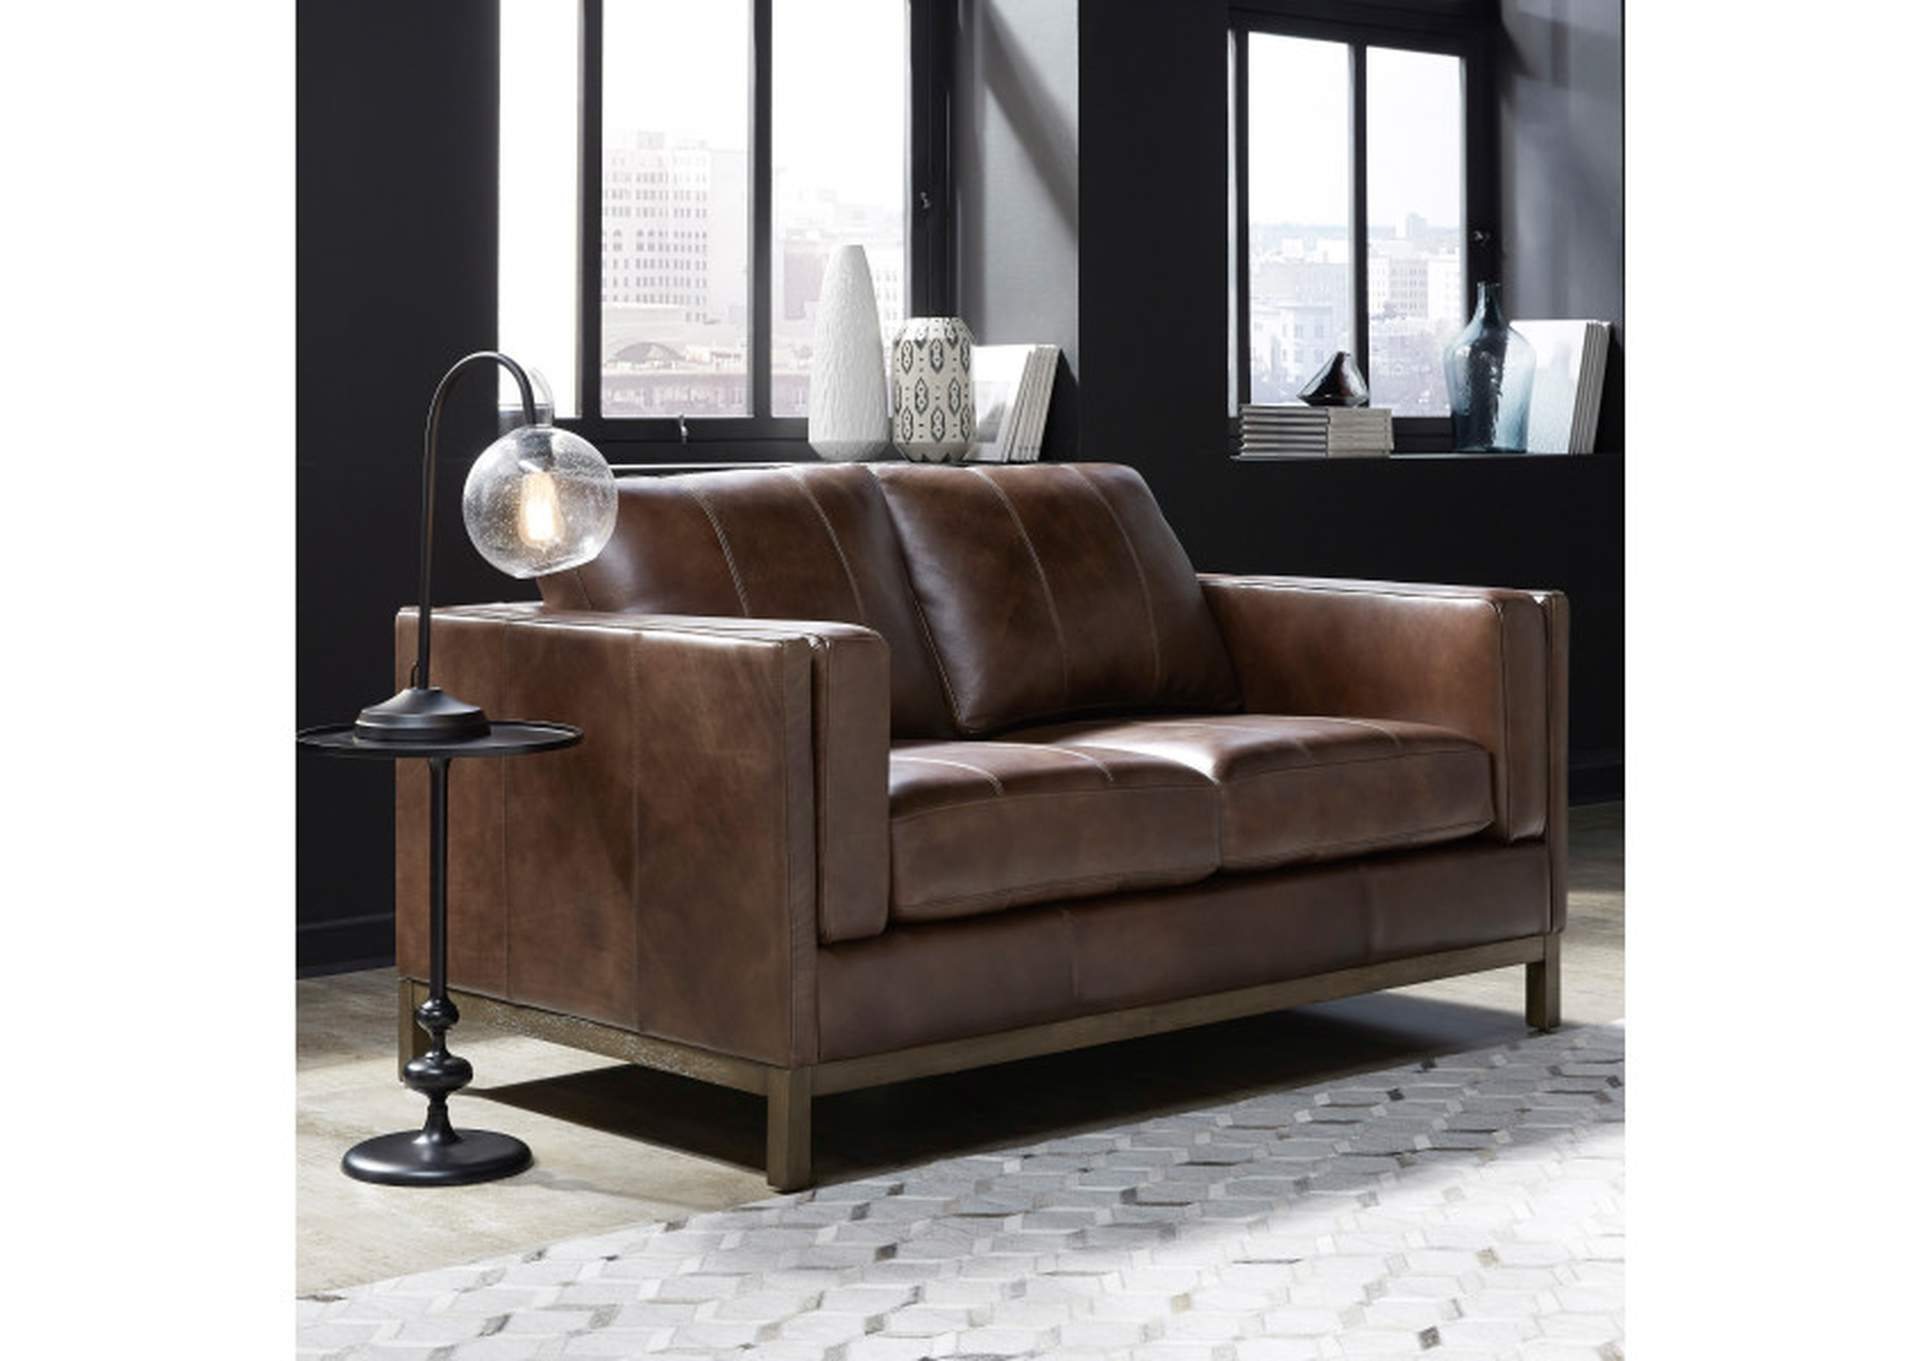 Drake Brown Leather Loveseat with Wooden Base,Pulaski Furniture